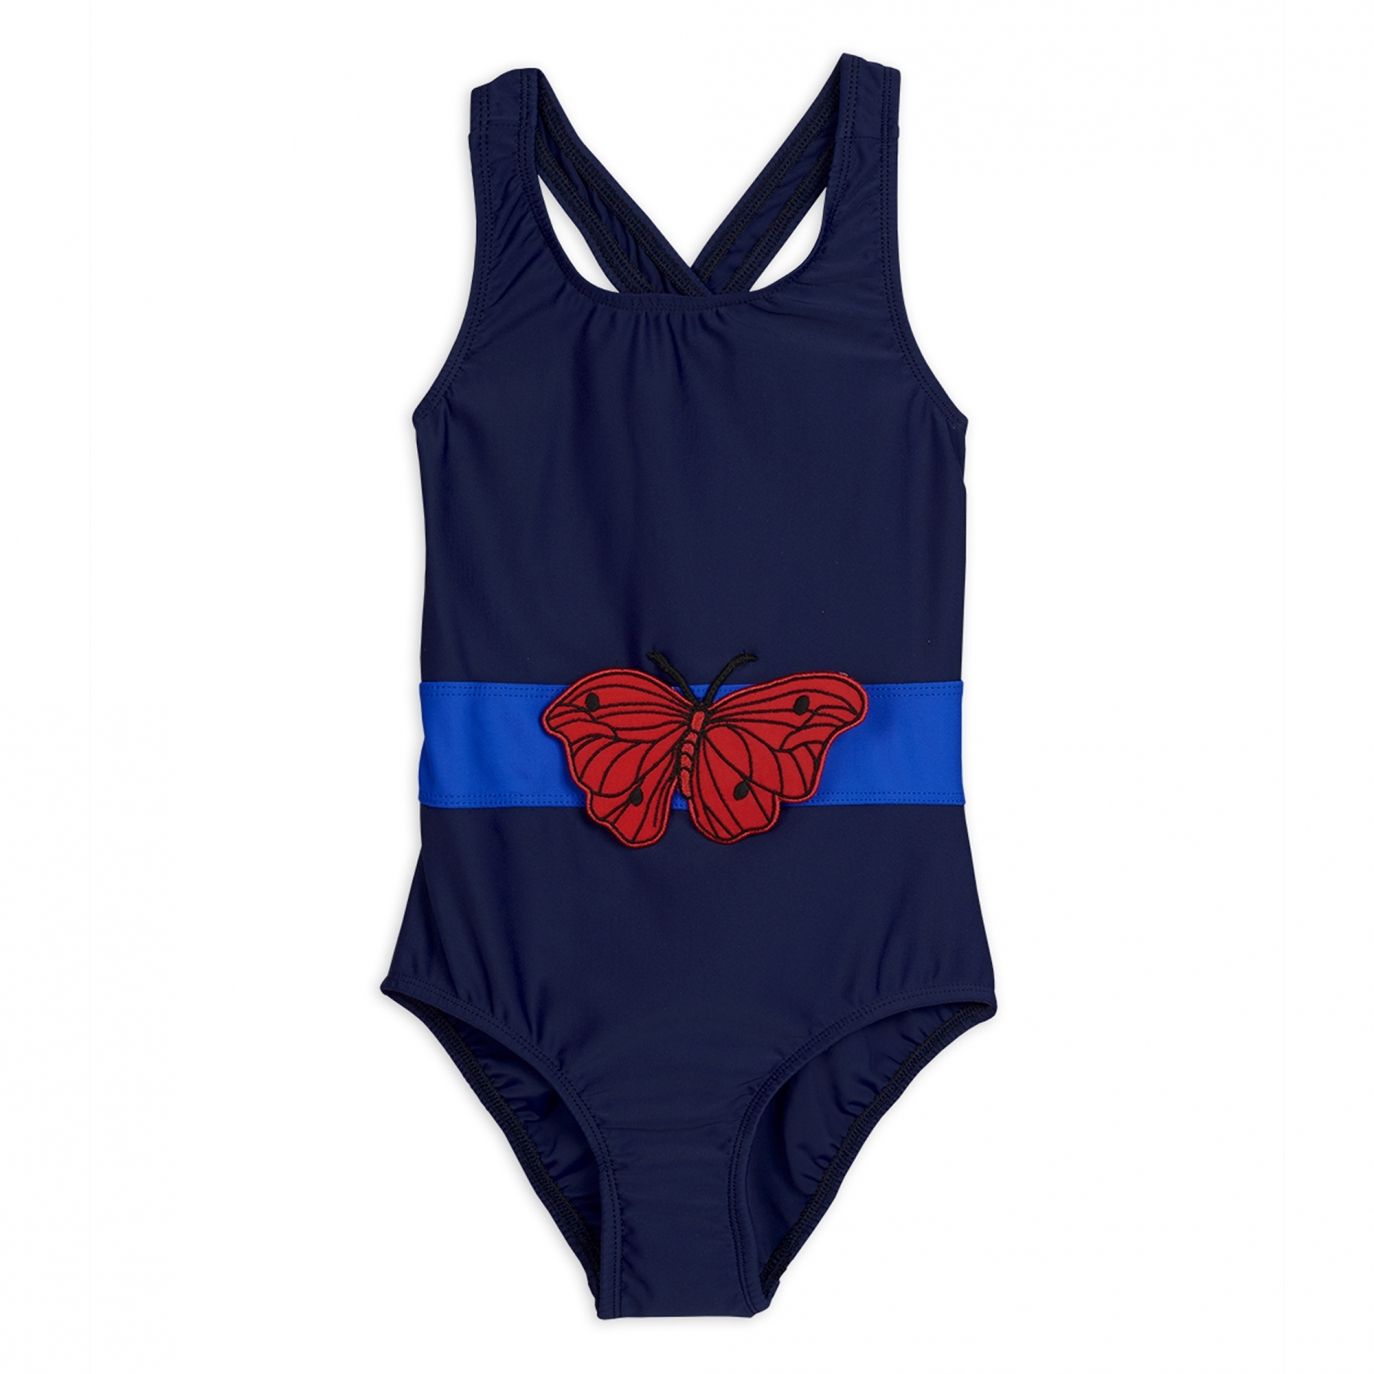 Mini Rodini - Strój kąpielowy Butterfly sporty swimsuit niebieski - Stroje kąpielowe - 2028011267 